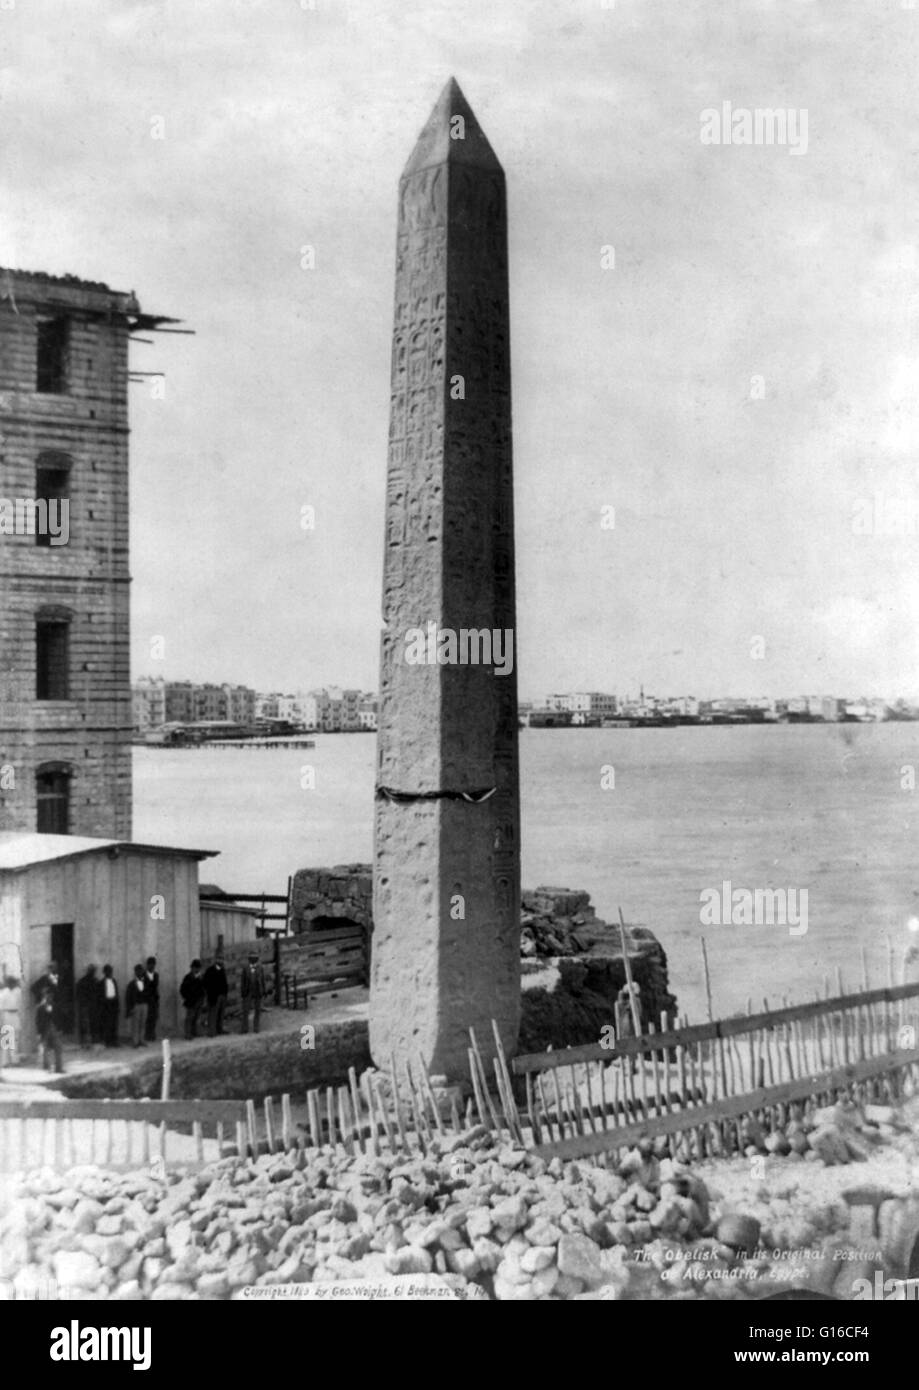 Der Obelisk Kleopatras Nadel in seine ursprüngliche Position in Alexandria, Ägypten. Kleopatras Nadel ist der populäre Name für jede der drei antiken ägyptischen Obelisken in London, Paris und New York City während des 19. Jahrhunderts wieder aufgebaut. Alle drei Nadeln sind Stockfoto